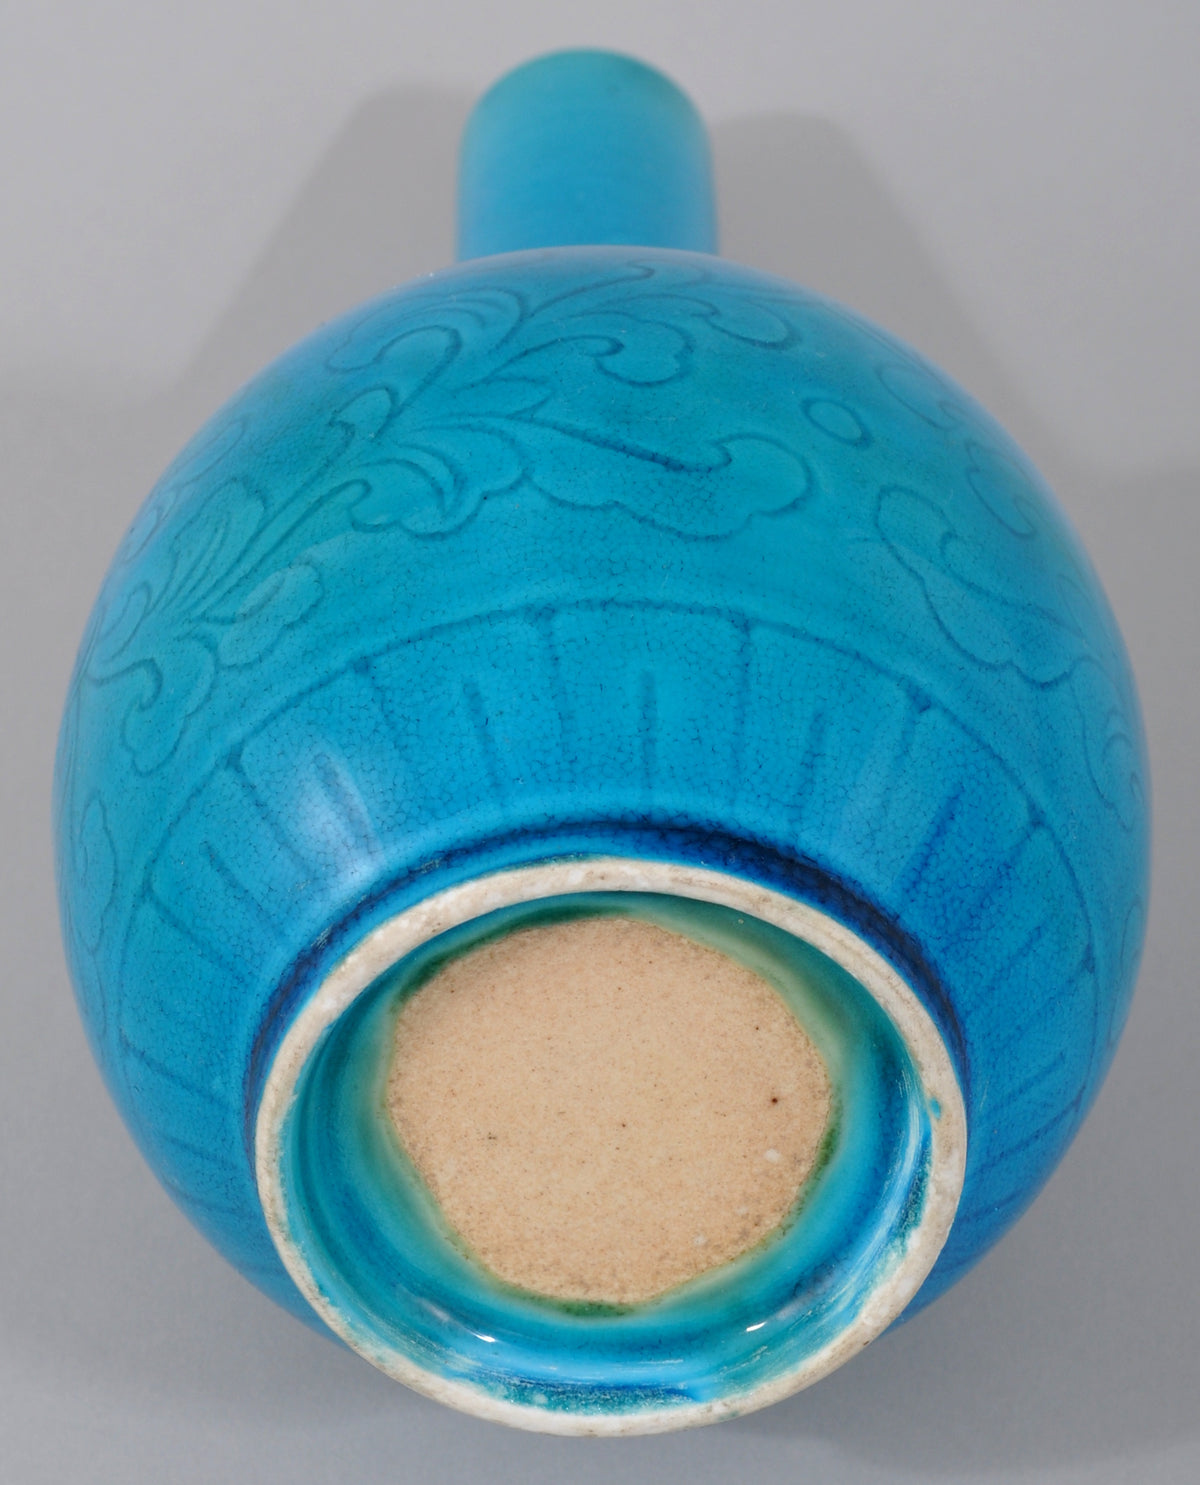 Antique 19th Century Chinese Qing Dynasty Blue Glazed Kangxi Style Stem Vase, Circa 1850